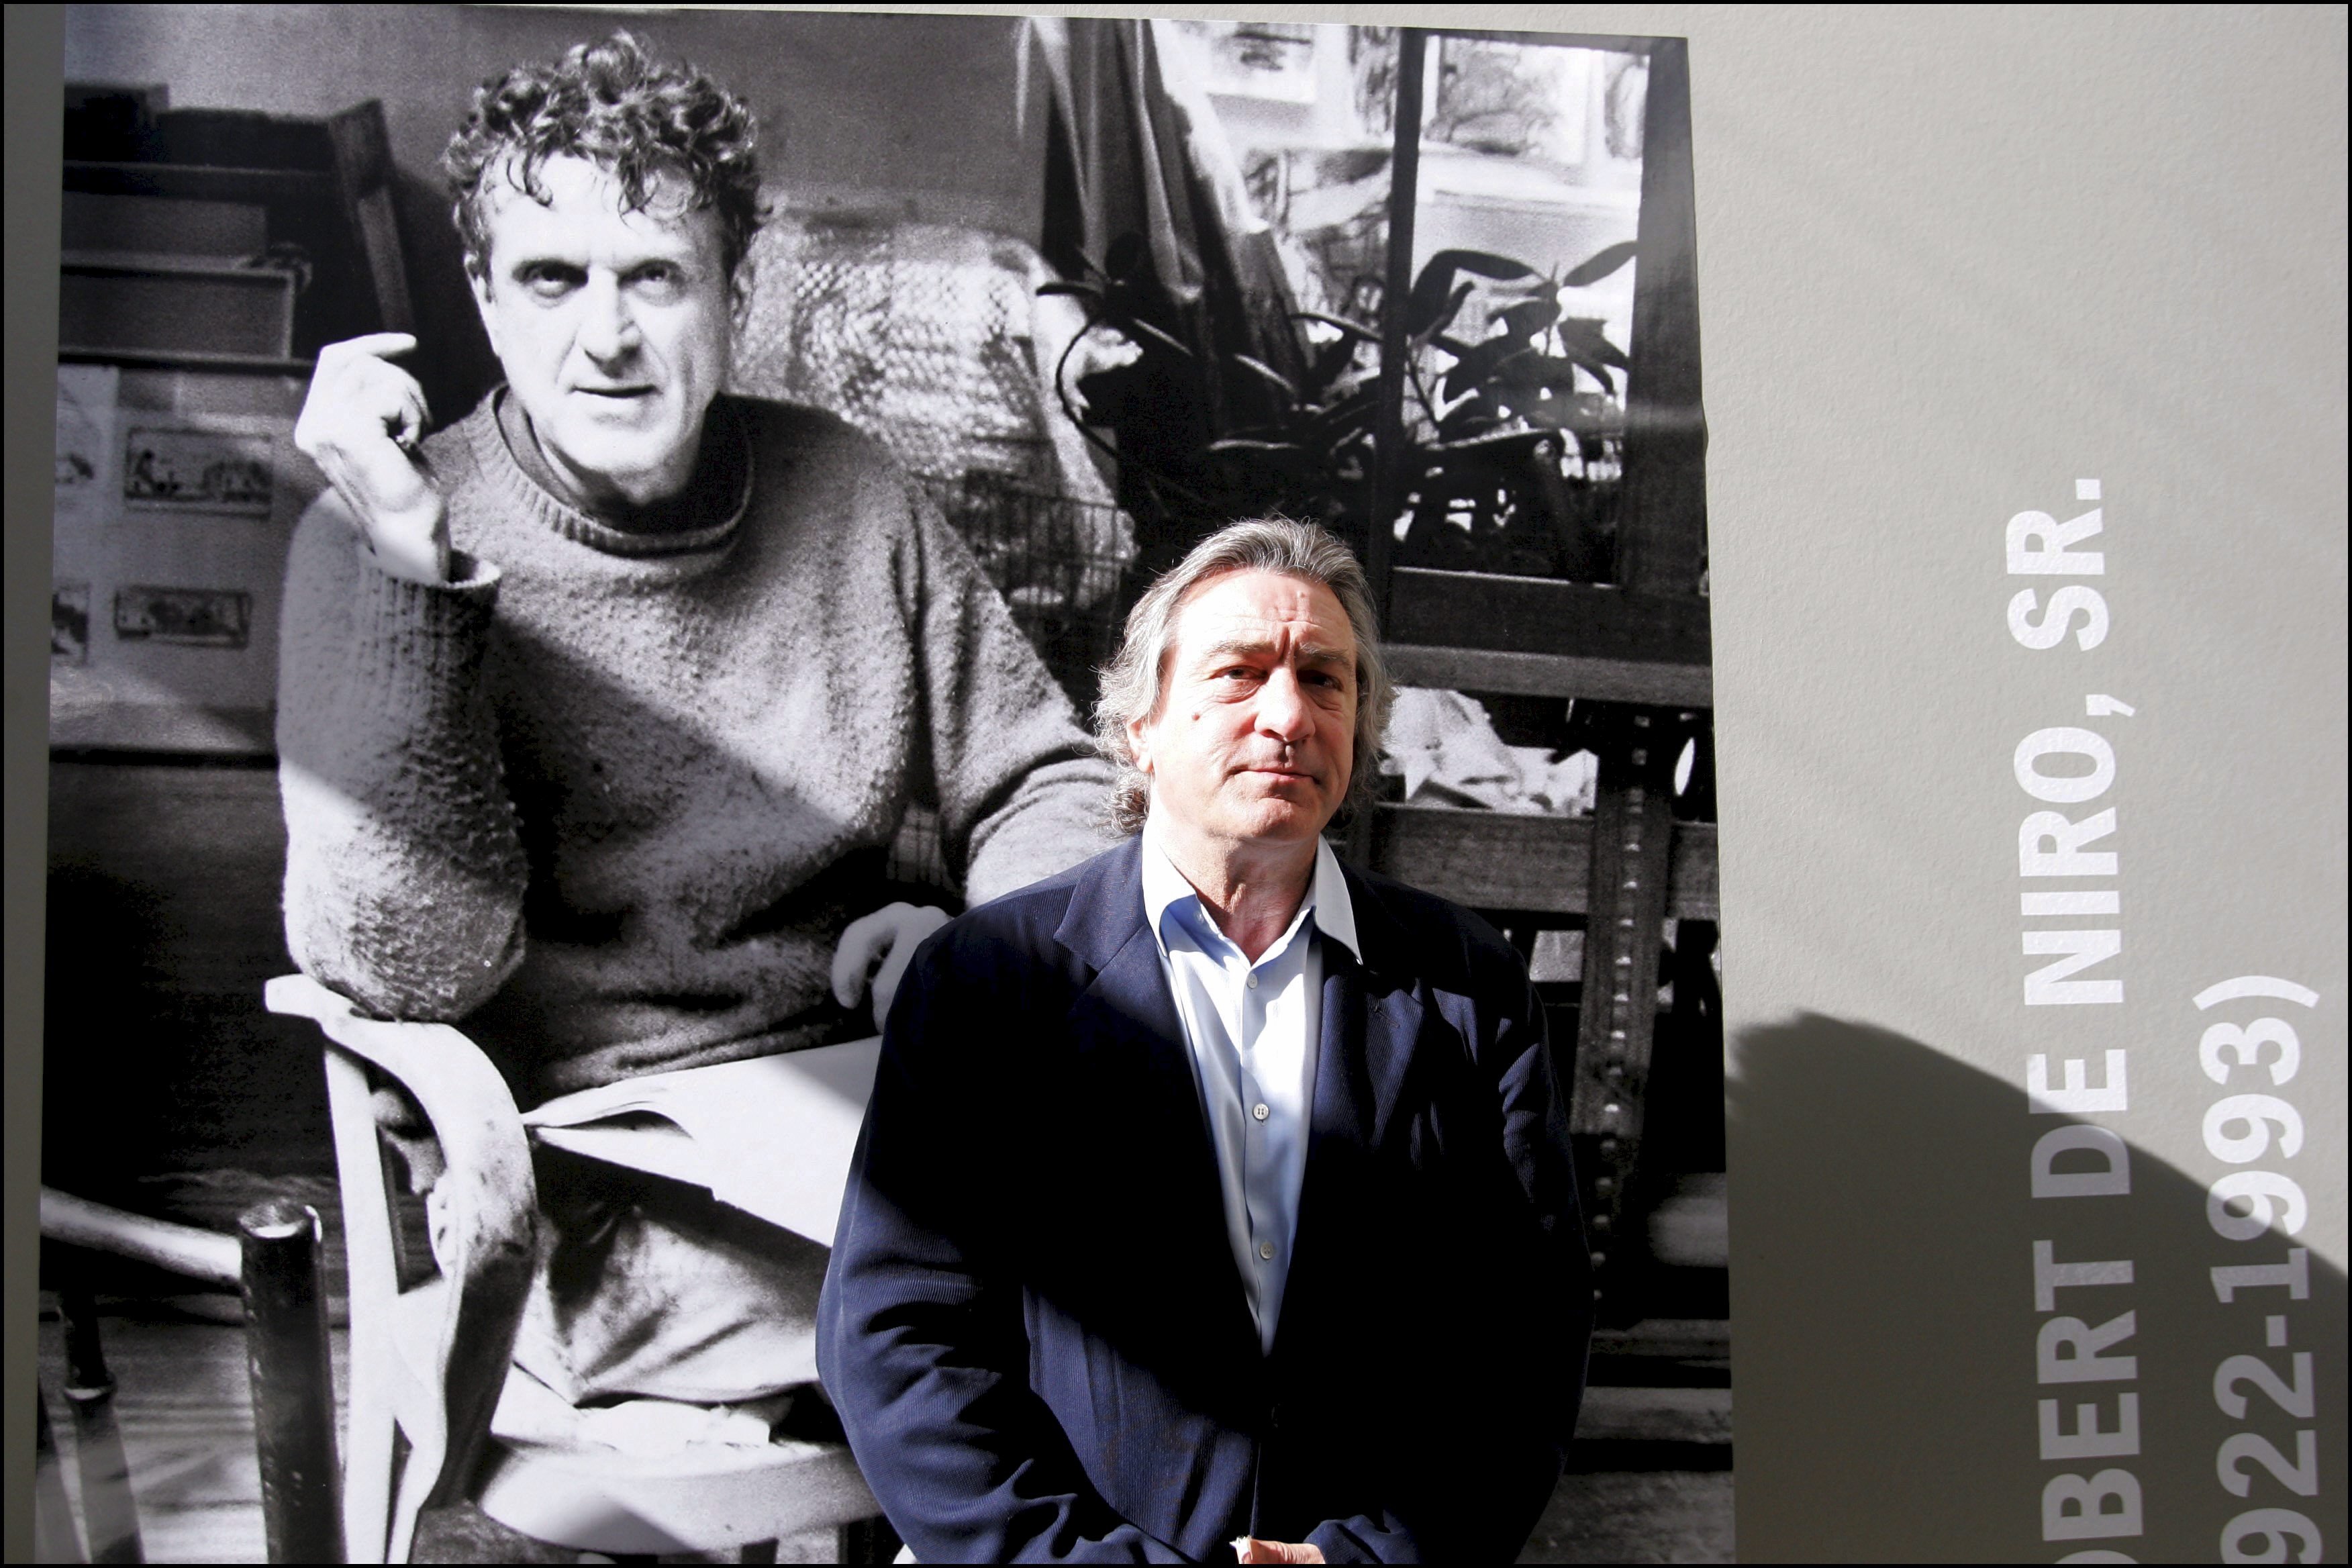 Robert De Niro posiert neben einem Porträt seines Vaters Robert Sr. in einer Ausstellung von Robert De Niro Sr. – Gemälde im La Piscine in Roubaix, Frankreich am 18. Juni 2005 | Quelle: Getty Images